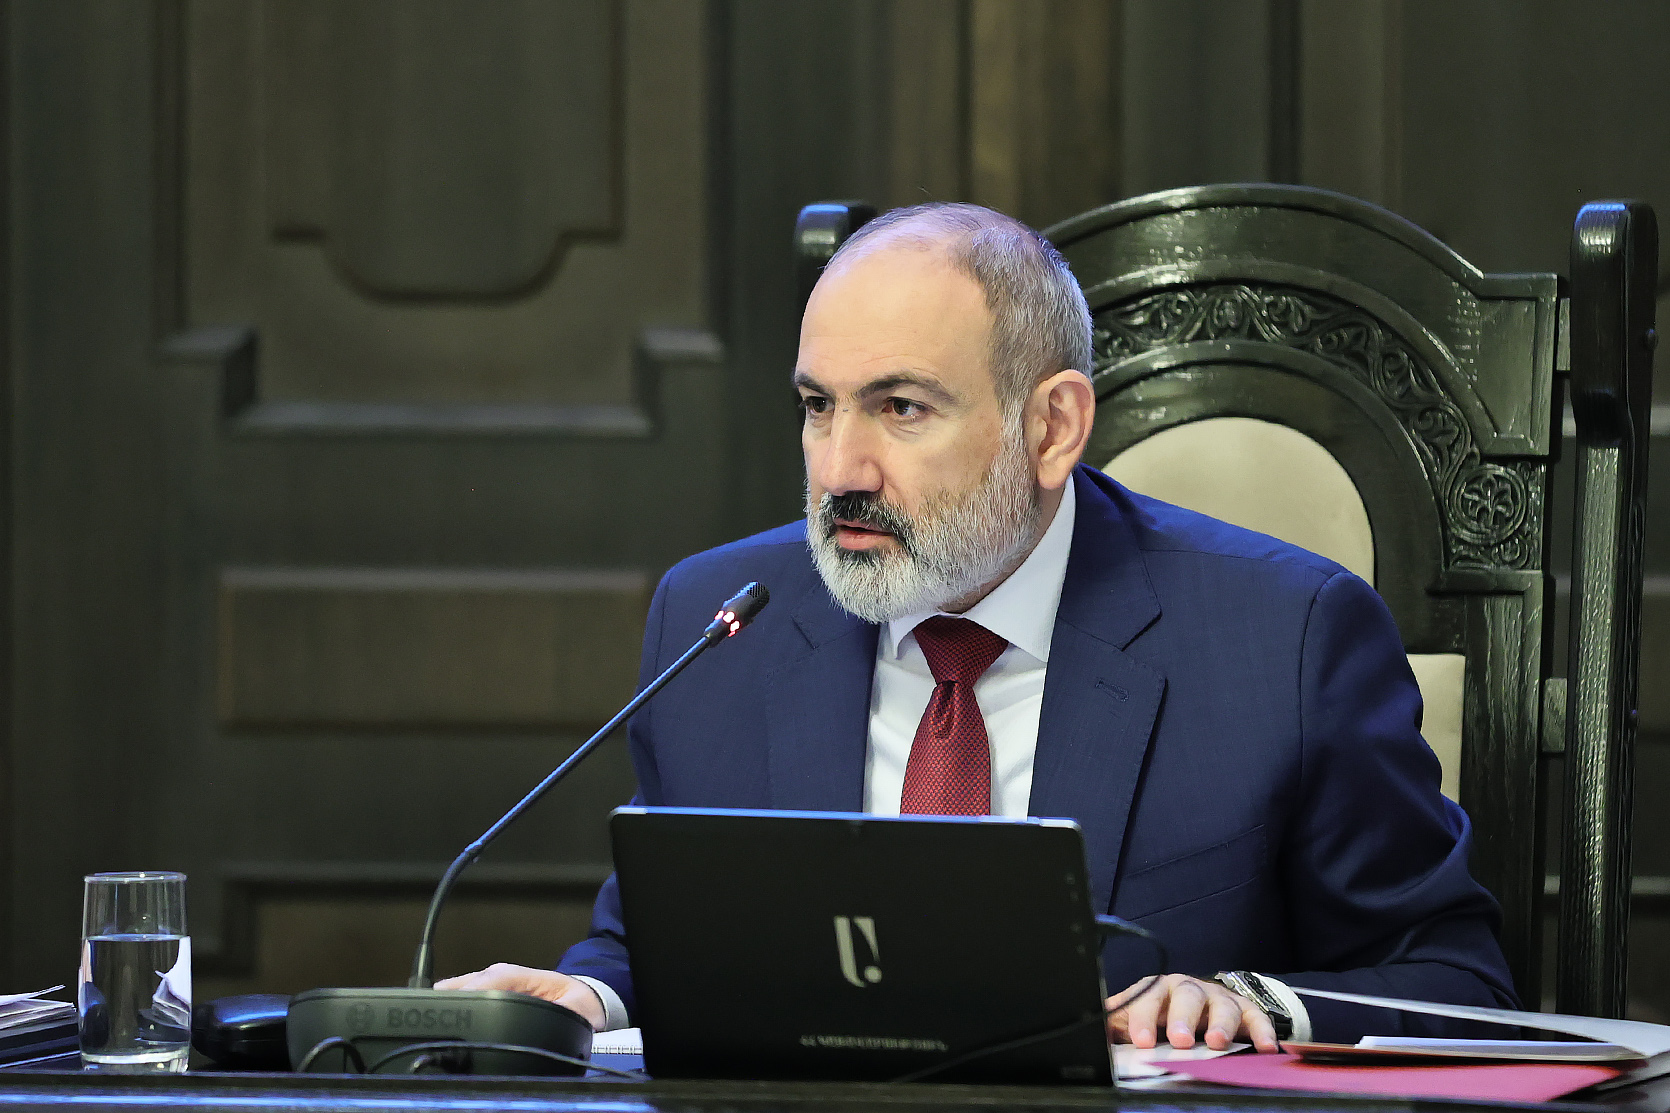 Ermenistan'da Ermeni hükümetinden başka bir hükümet yoktur ve olamaz